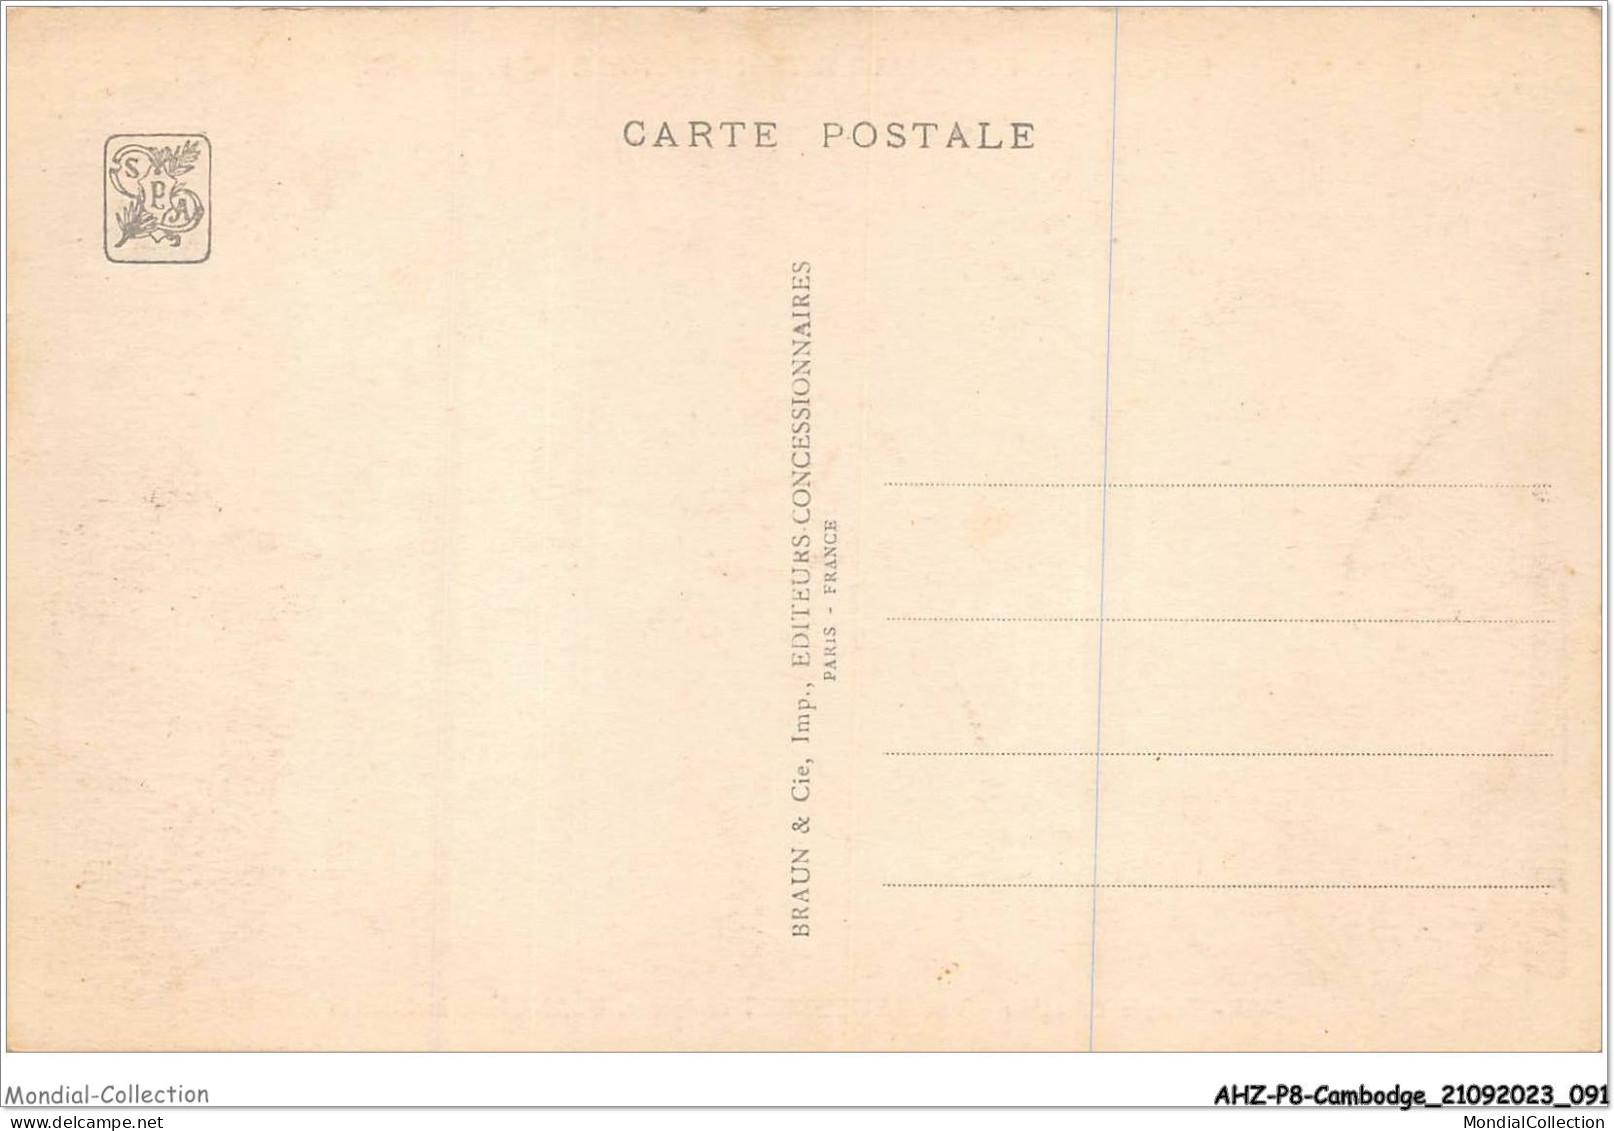 AHZP8-CAMBODGE-0728 - EXPOSITION COLONIALE INTERNATIONALE - PARIS 1931 - TEMPLE D'ANGKOR-VAT - AUBERLET SCULPTEUR - Cambodia